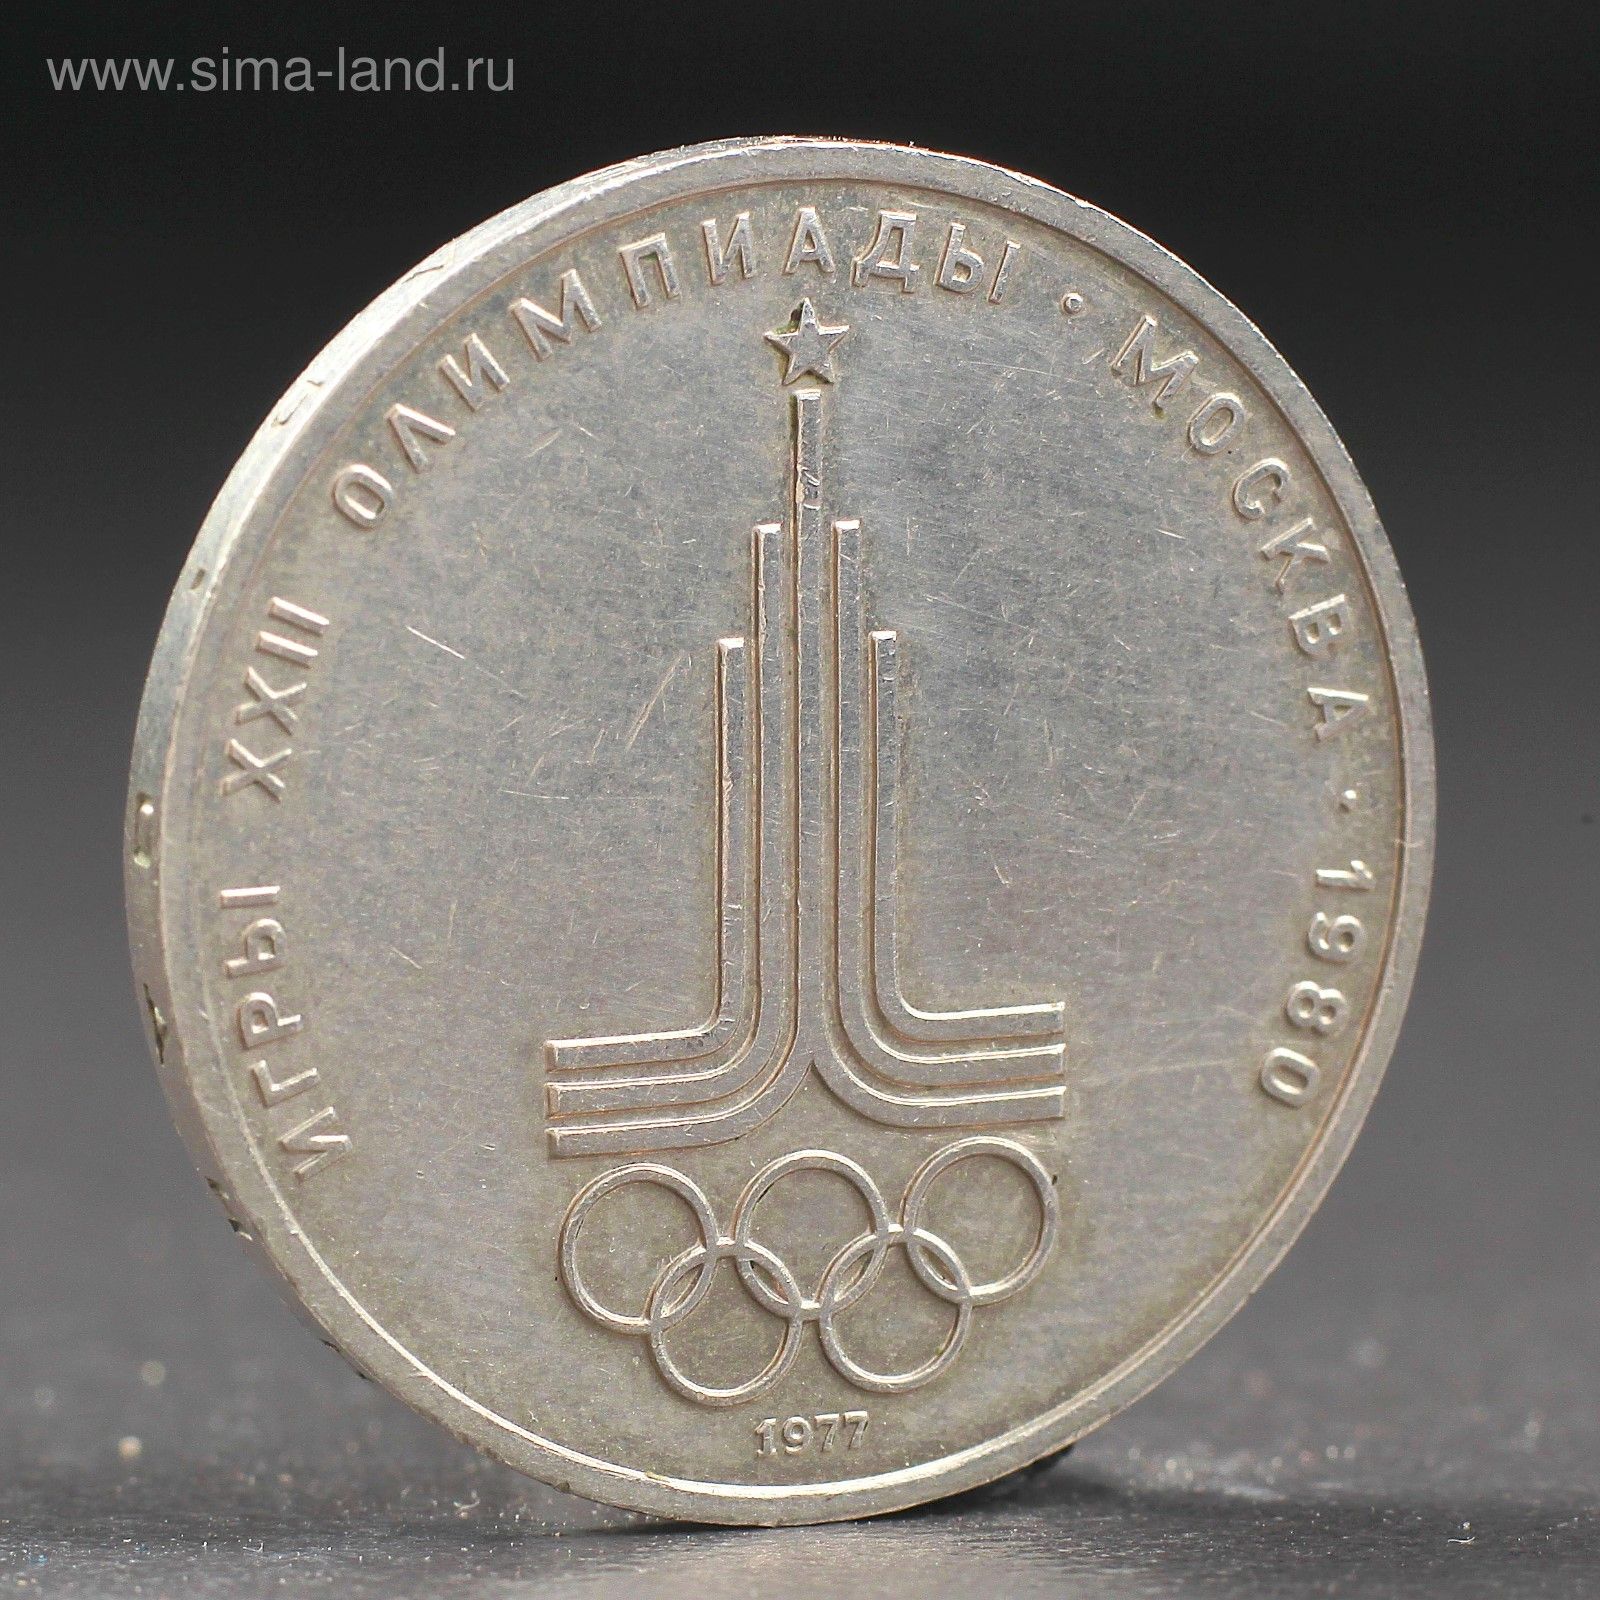 30 рублей в 80 годы. Монета СССР 1 рубль 1980 года Олимпийский. Монета 1 рубль 1977 года. Олимпийский рубль 1977.